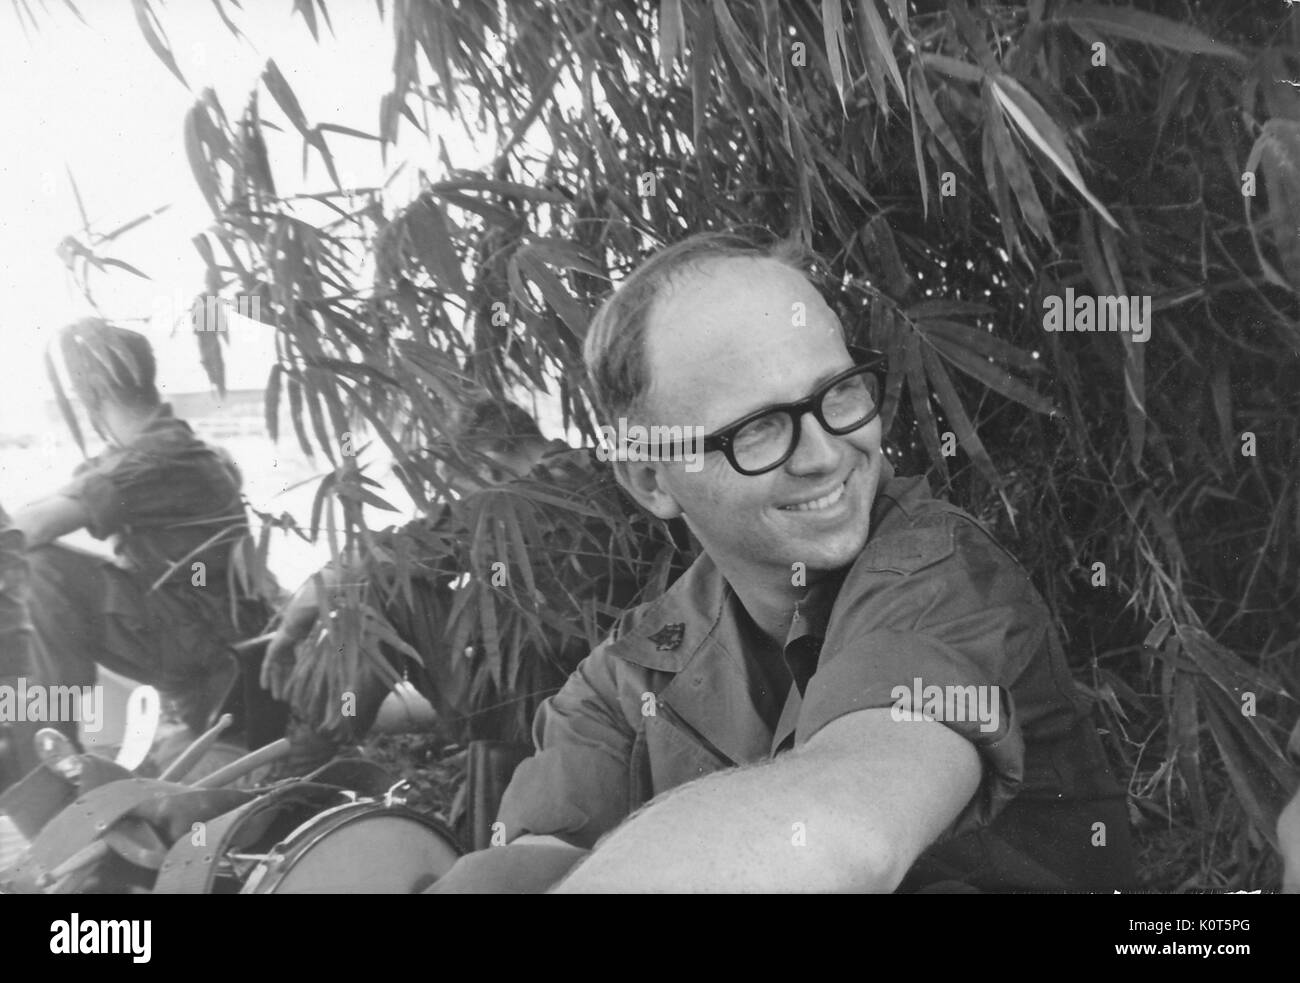 Ein Mitglied der United States Army ersten Infanterie Division sitzen im Schatten von einigen Hohen tropischen Pflanzen erstellt, Trommeln und ein anderer Soldat im Schatten ruhen in der Nähe gesehen, Vietnam, 1967. Stockfoto